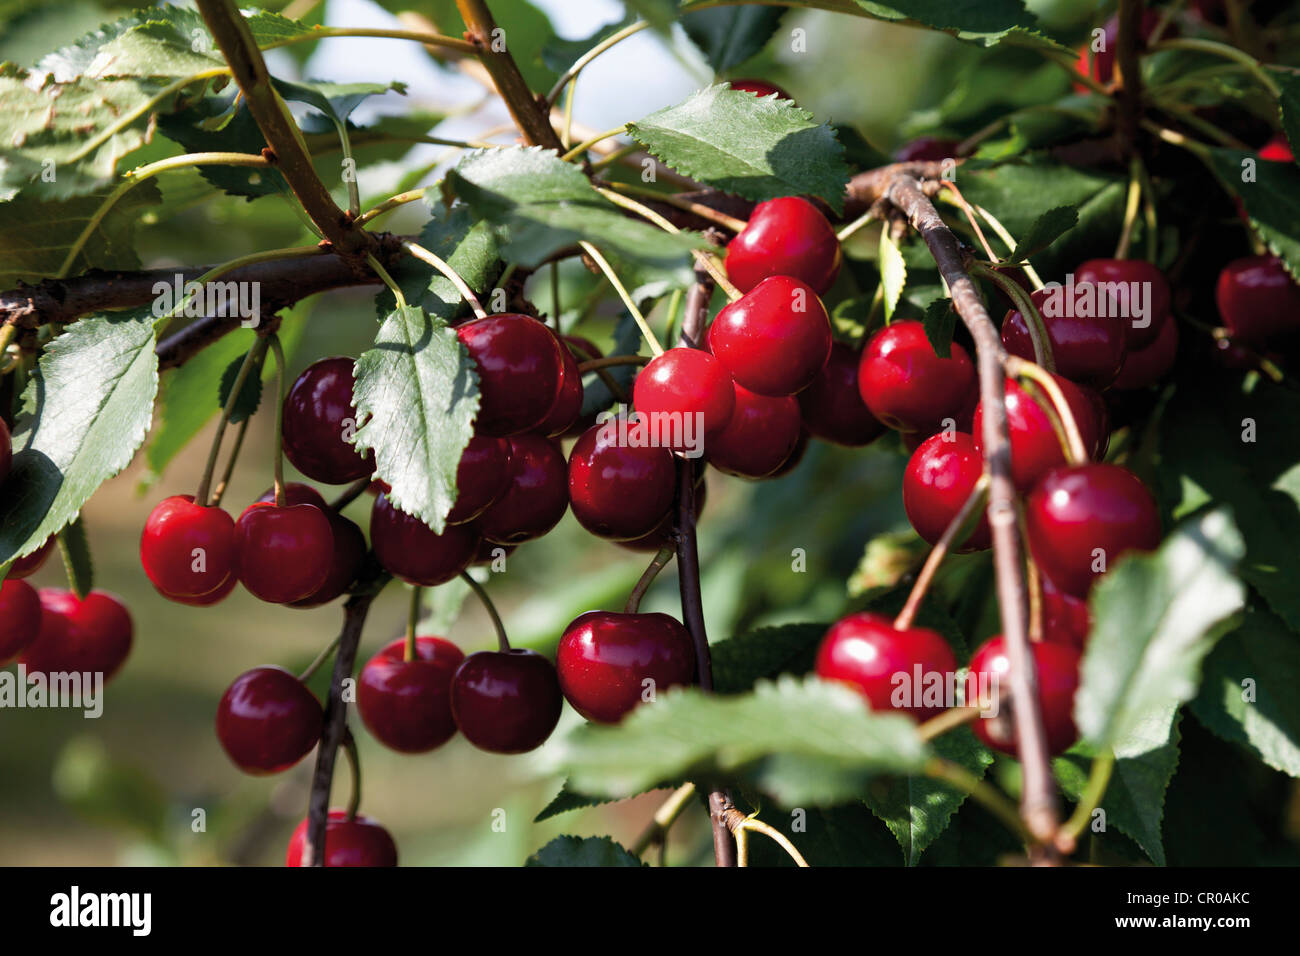 Sour cherries (Prunus cerasus) Stock Photo